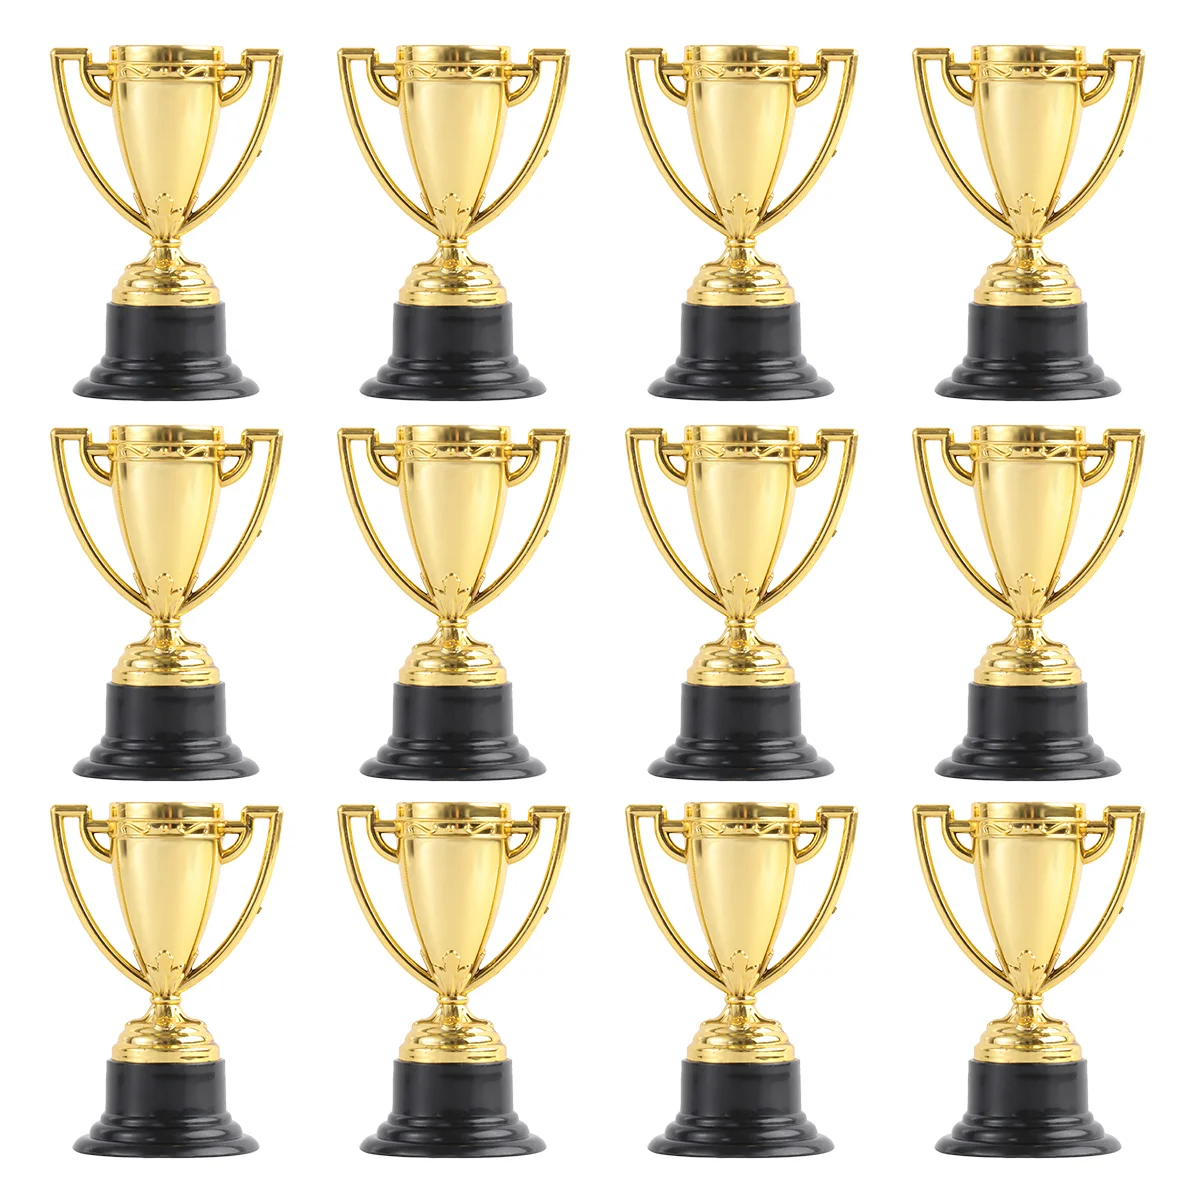 

Трофей, трофеи, награды для детей, мини-награды, золотой спортивный Кубок, бейсбол, конфетбольная церемония, место, футбол, призы на Хэллоуин